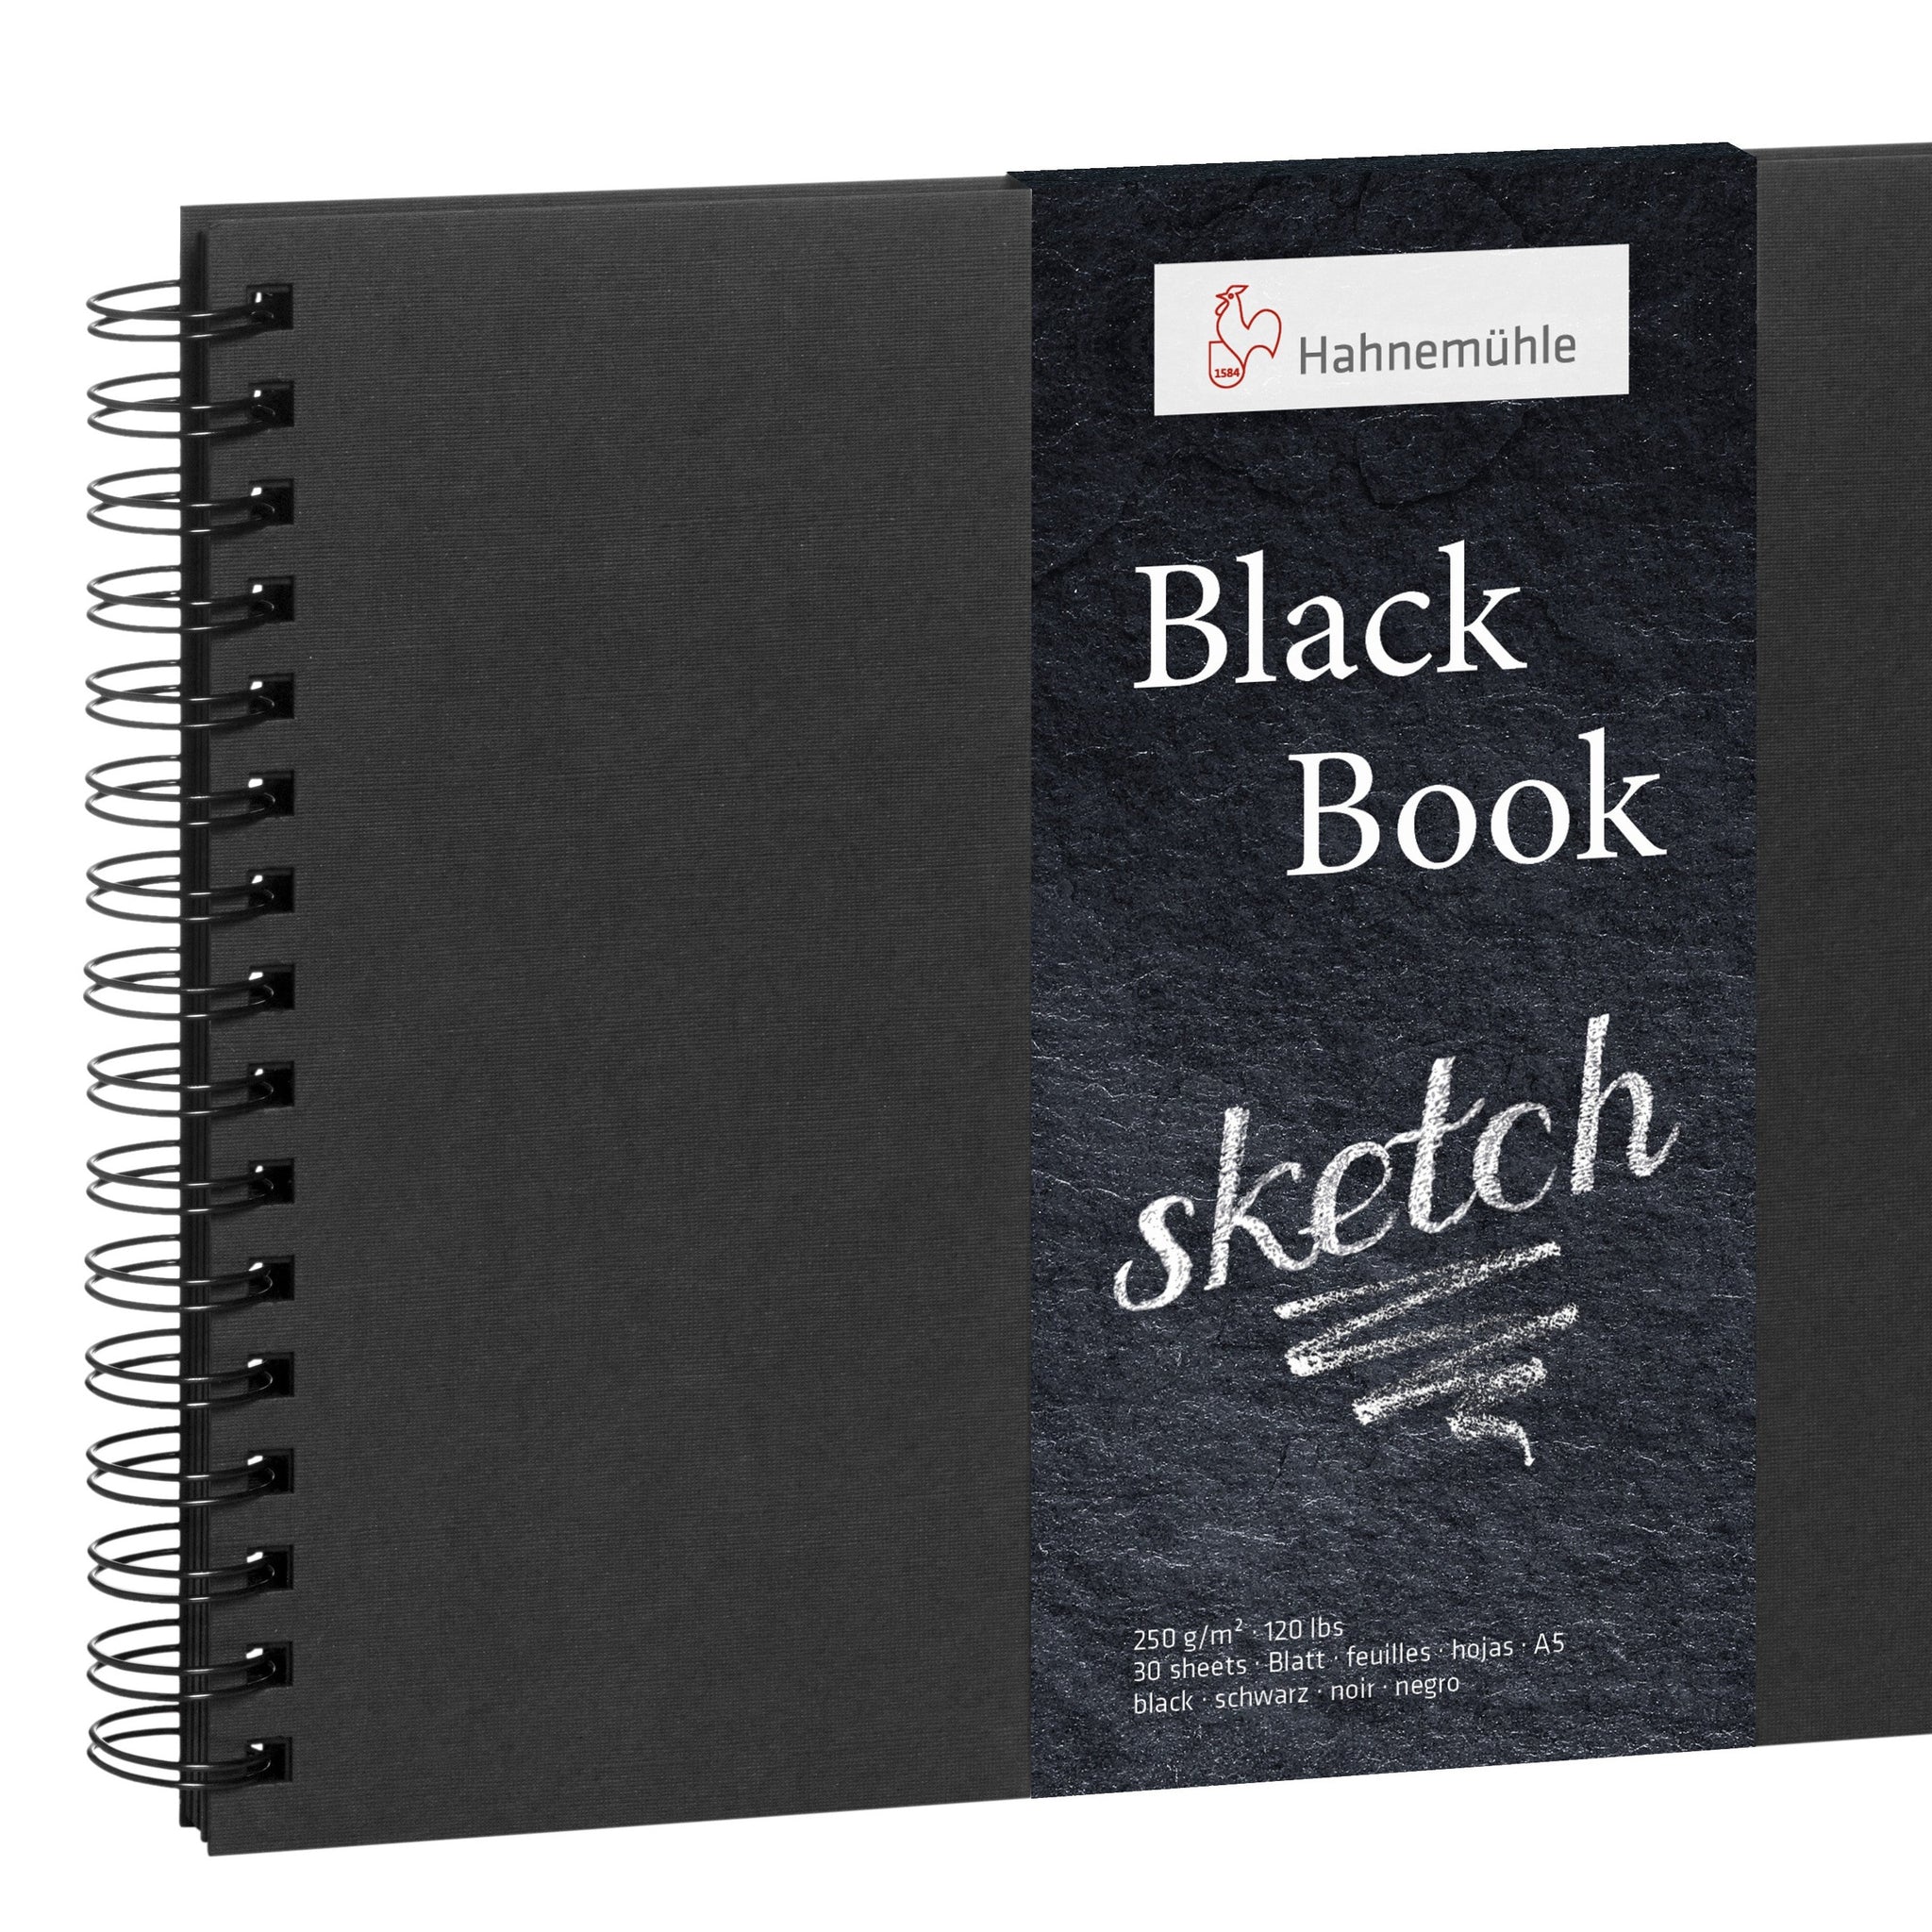 Hahnemule Black Sketchbooks